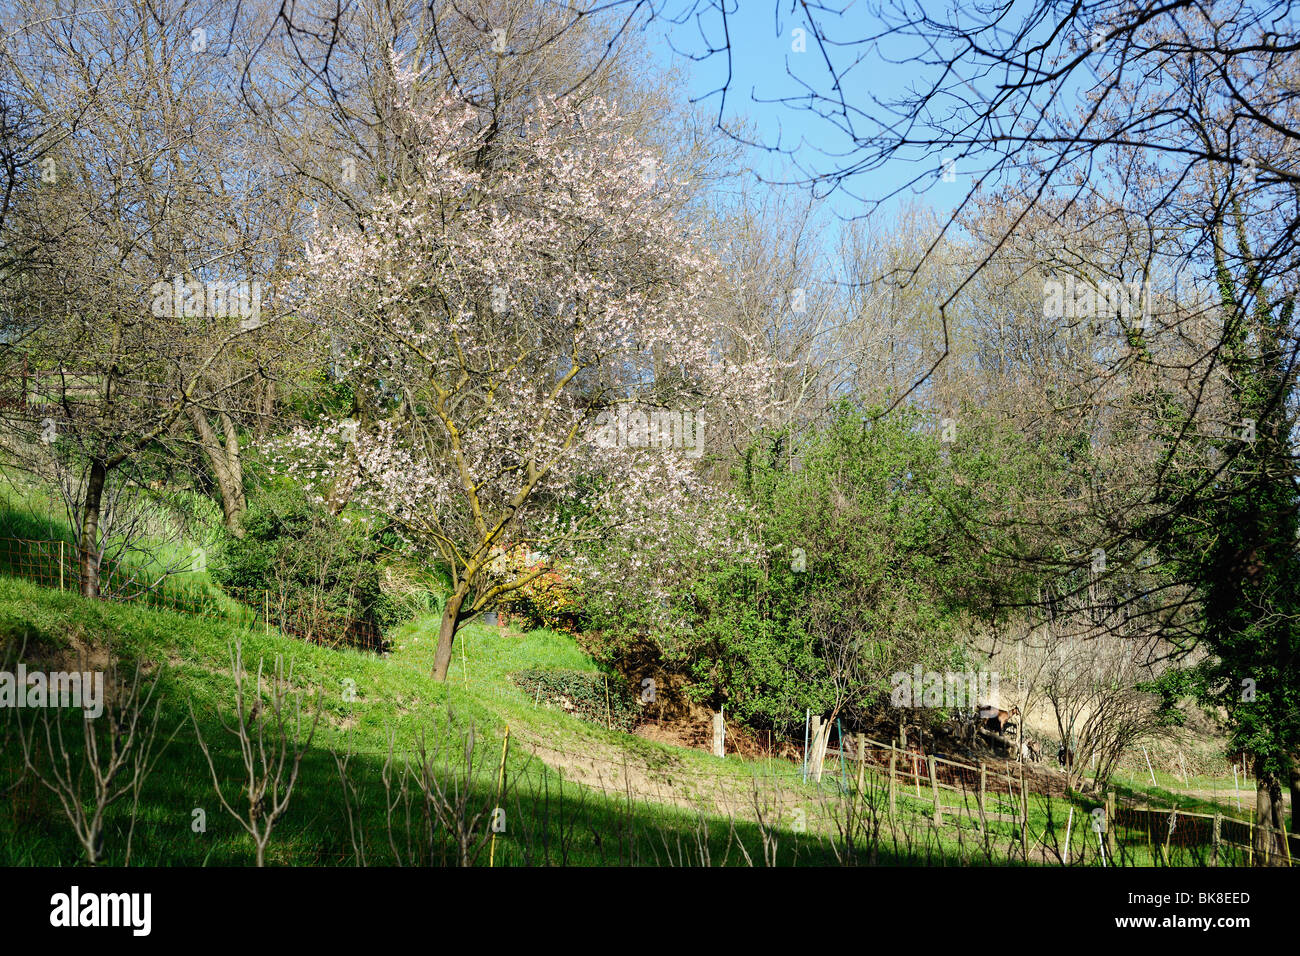 Arbre en fleurs dans le jardin à flanc de colline sauvage, Lombardie, Italie, Europe. Il y a quelques chèvres dans le jardin. Banque D'Images